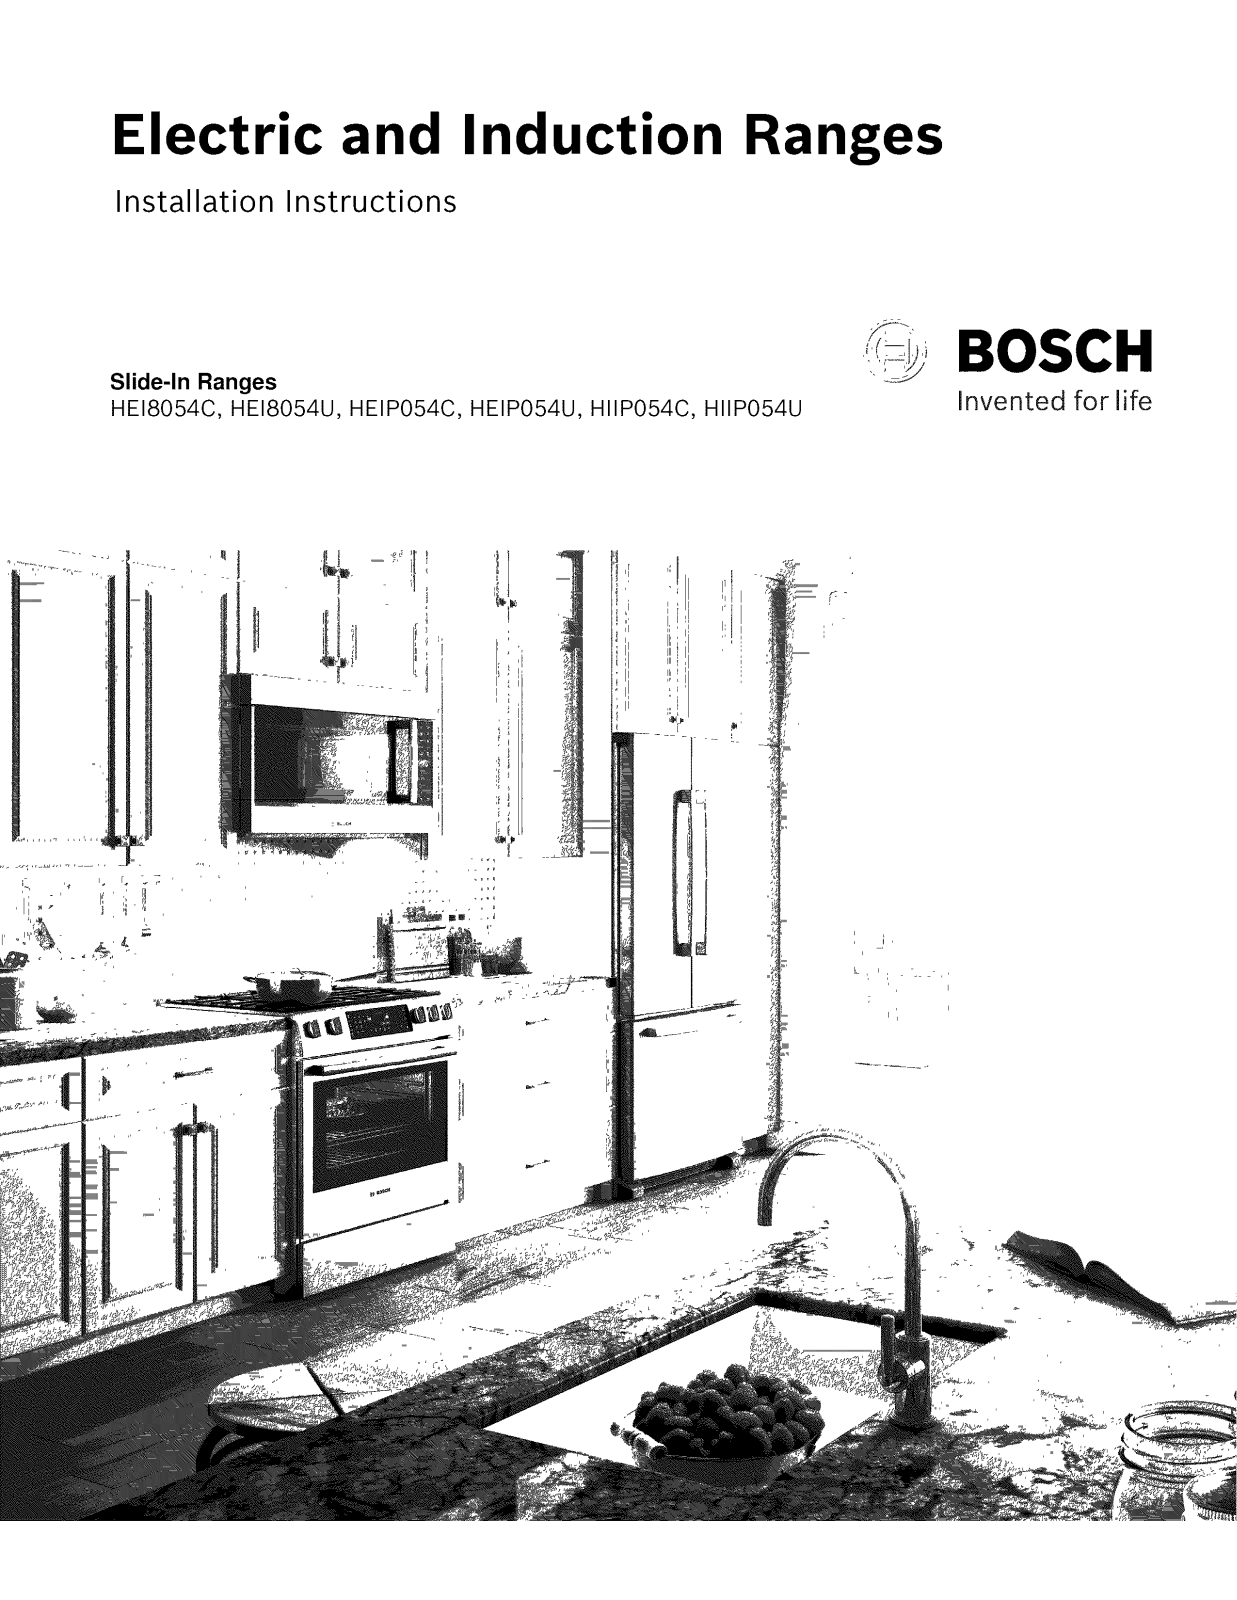 Bosch HIIP054U/06, HIIP054U/05, HIIP054U/04, HIIP054U/03, HIIP054U/02 Installation Guide